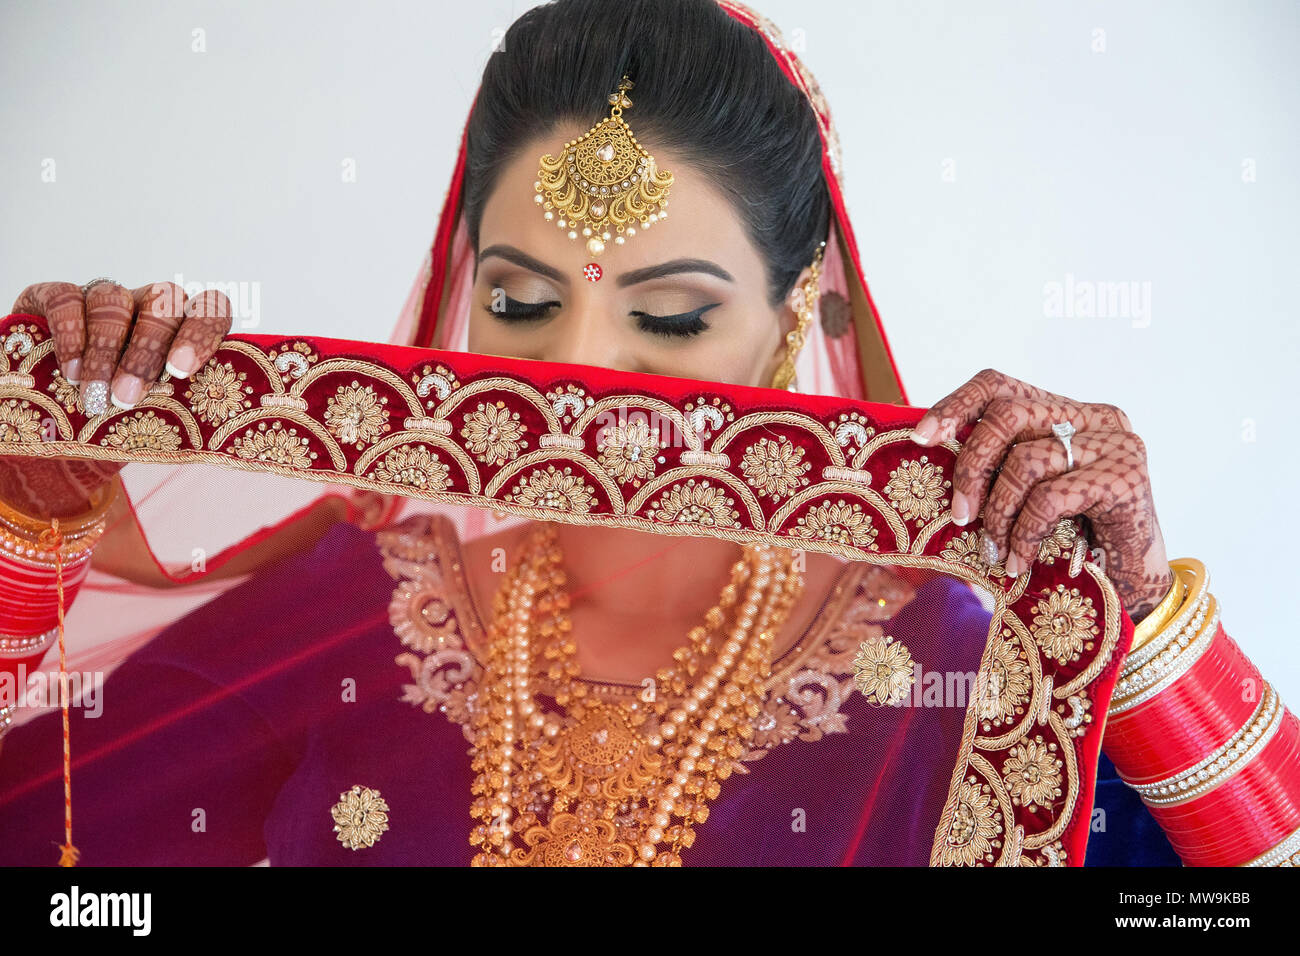 Pakistani & Indian bride wedding style showing bridal dress Stock Photo